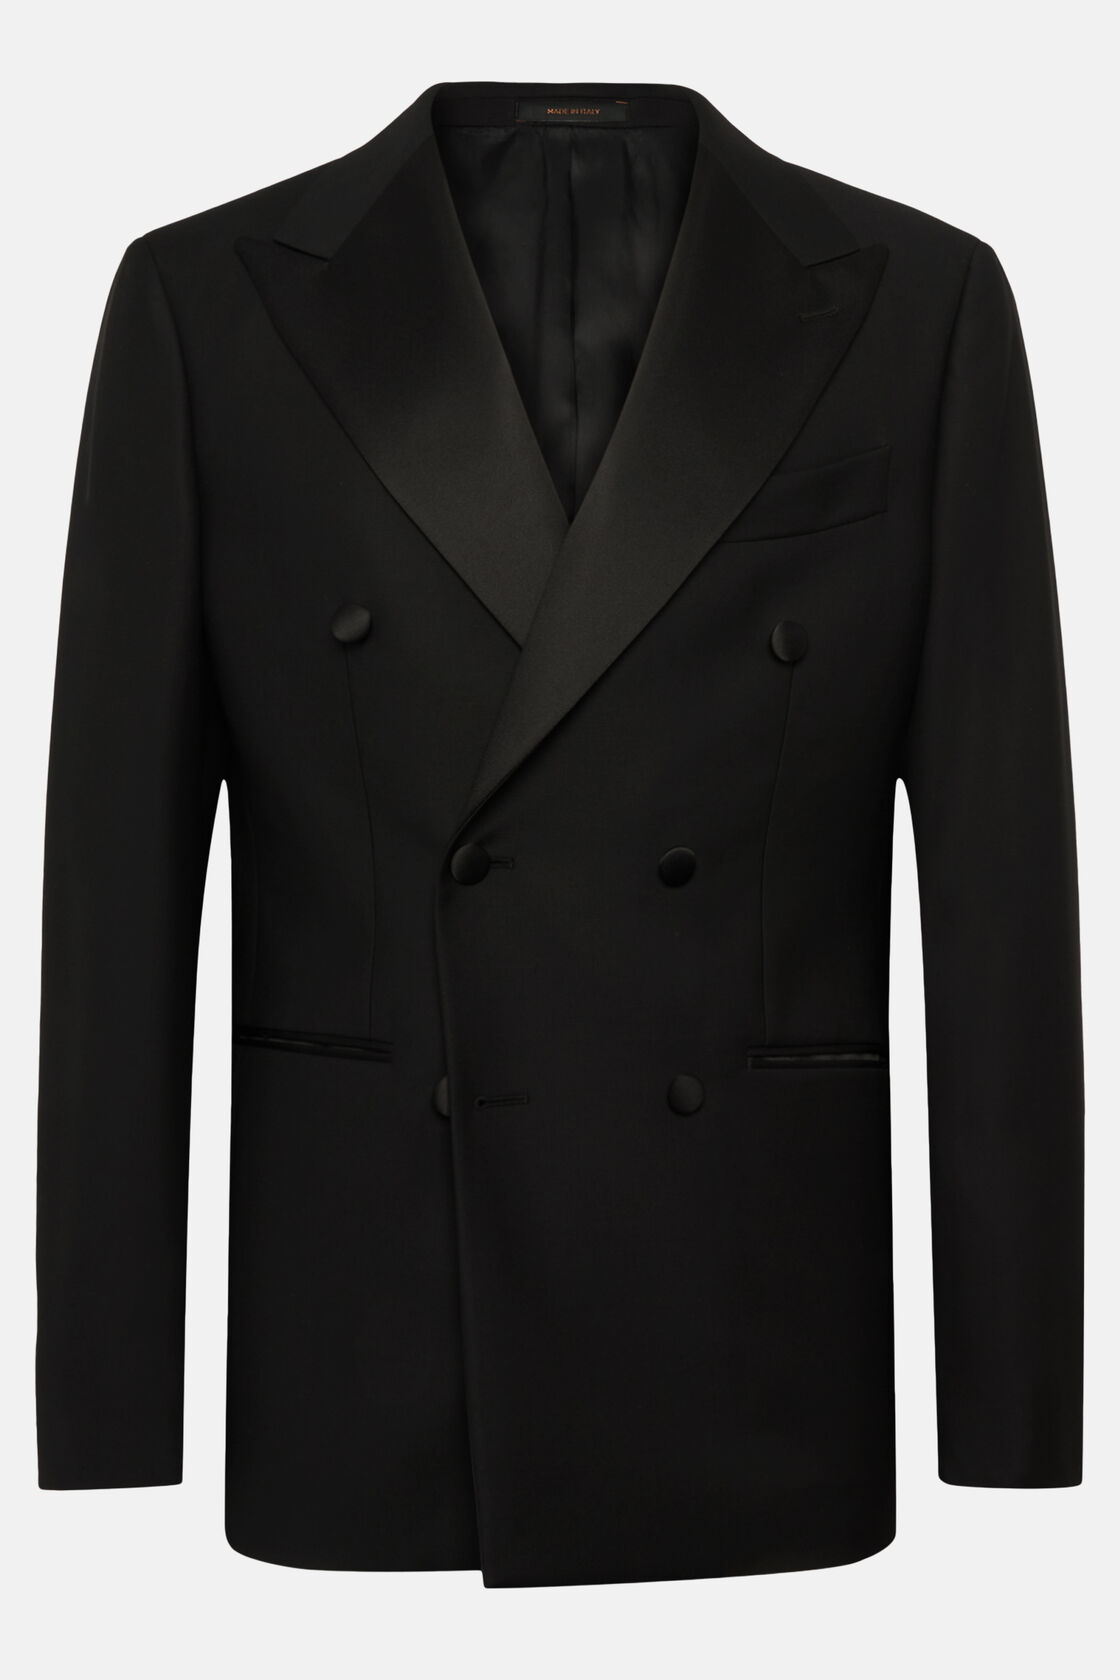 Black Wool Dinner Suit with Peak Lapels, , hi-res